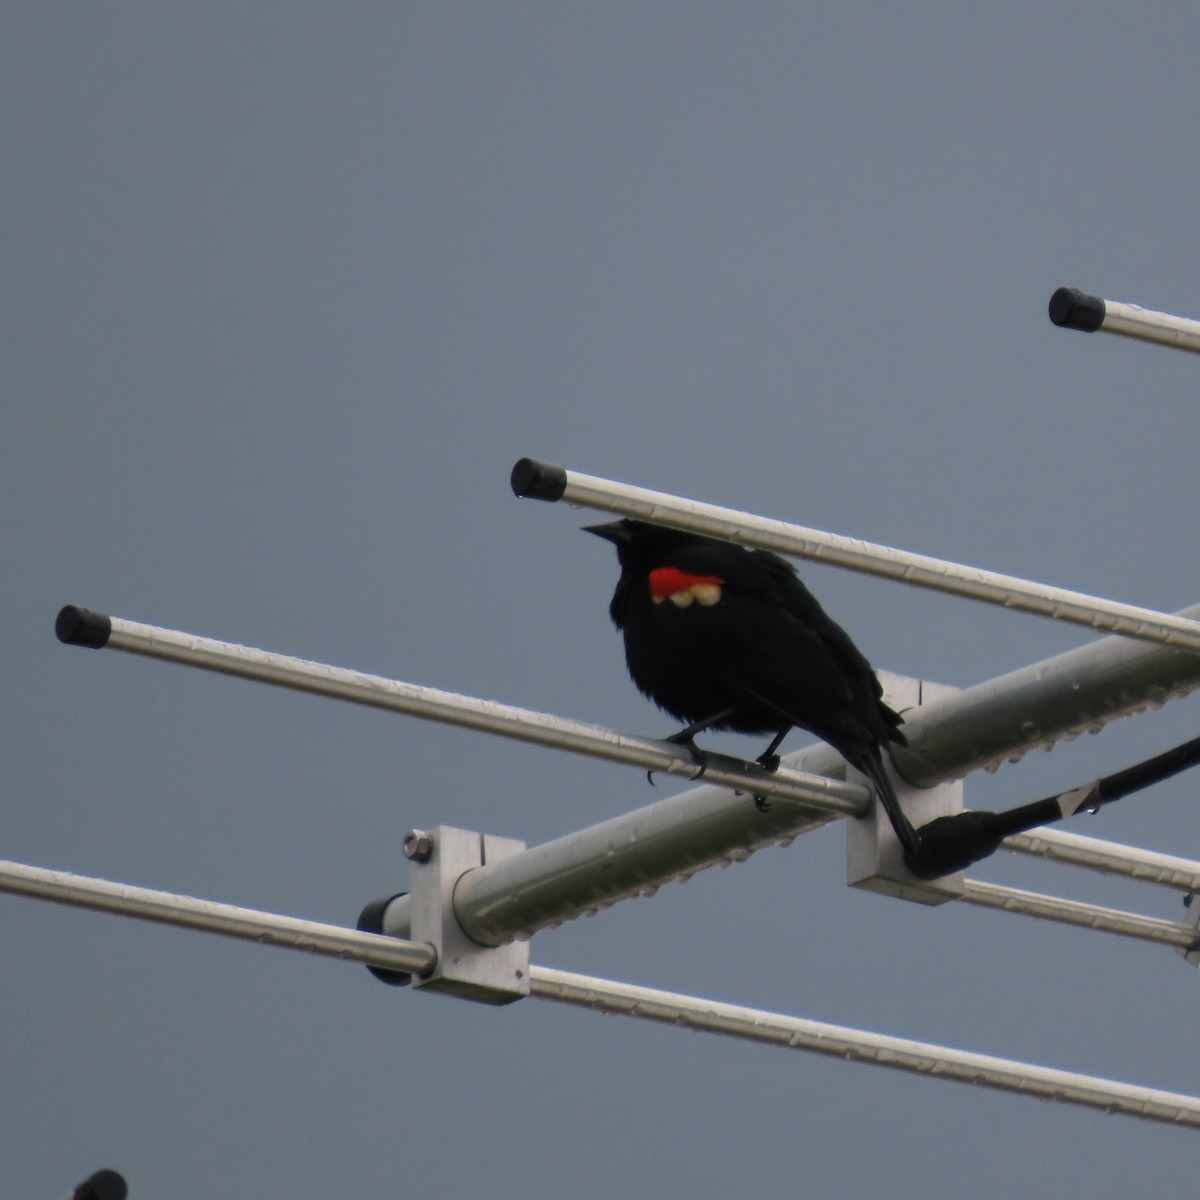 Red-winged Blackbird - Karen Lintala